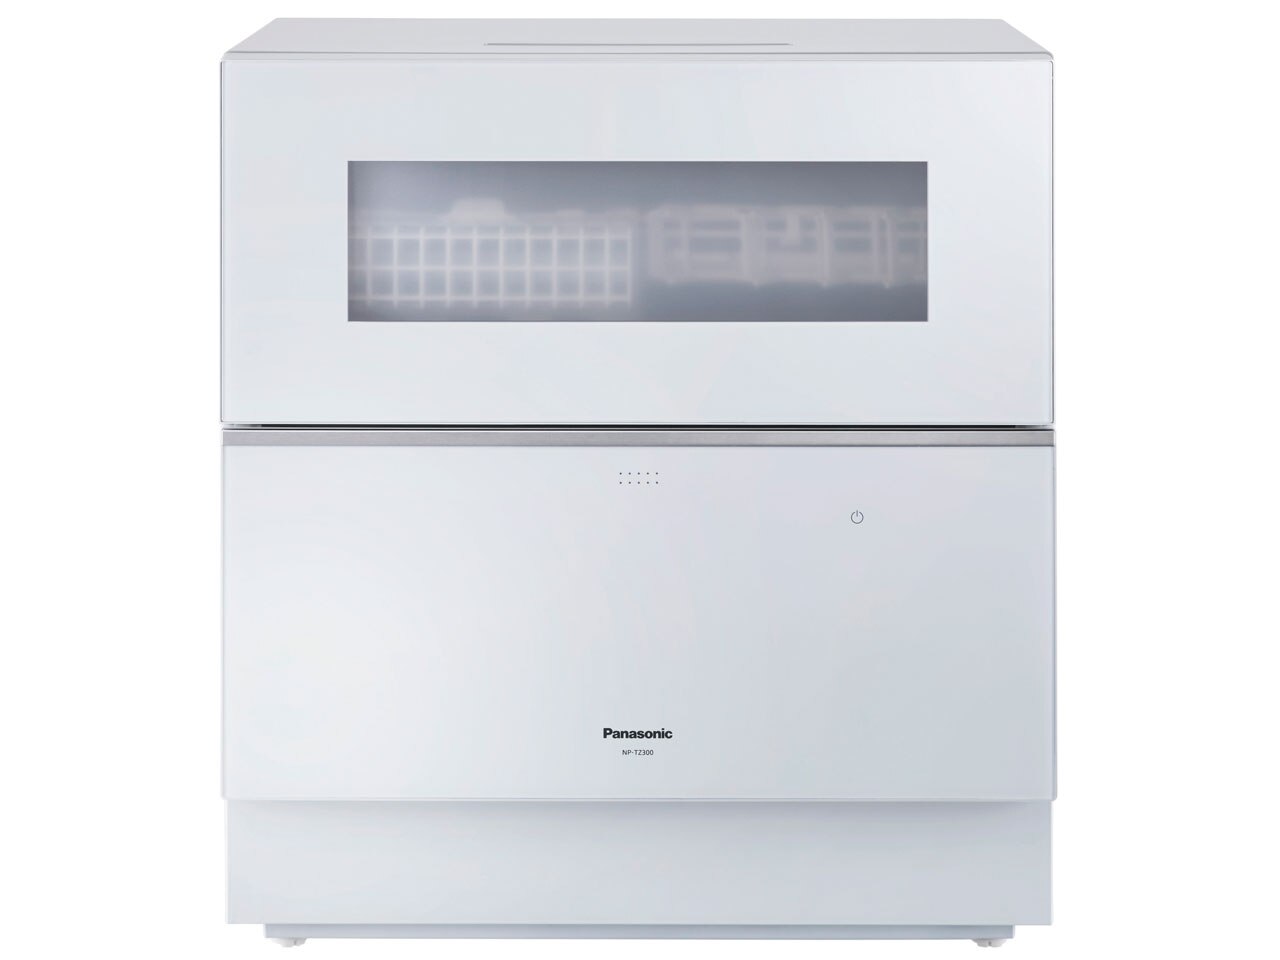 パナソニック 食器洗い乾燥機 NP-TZ300-W　ホワイト